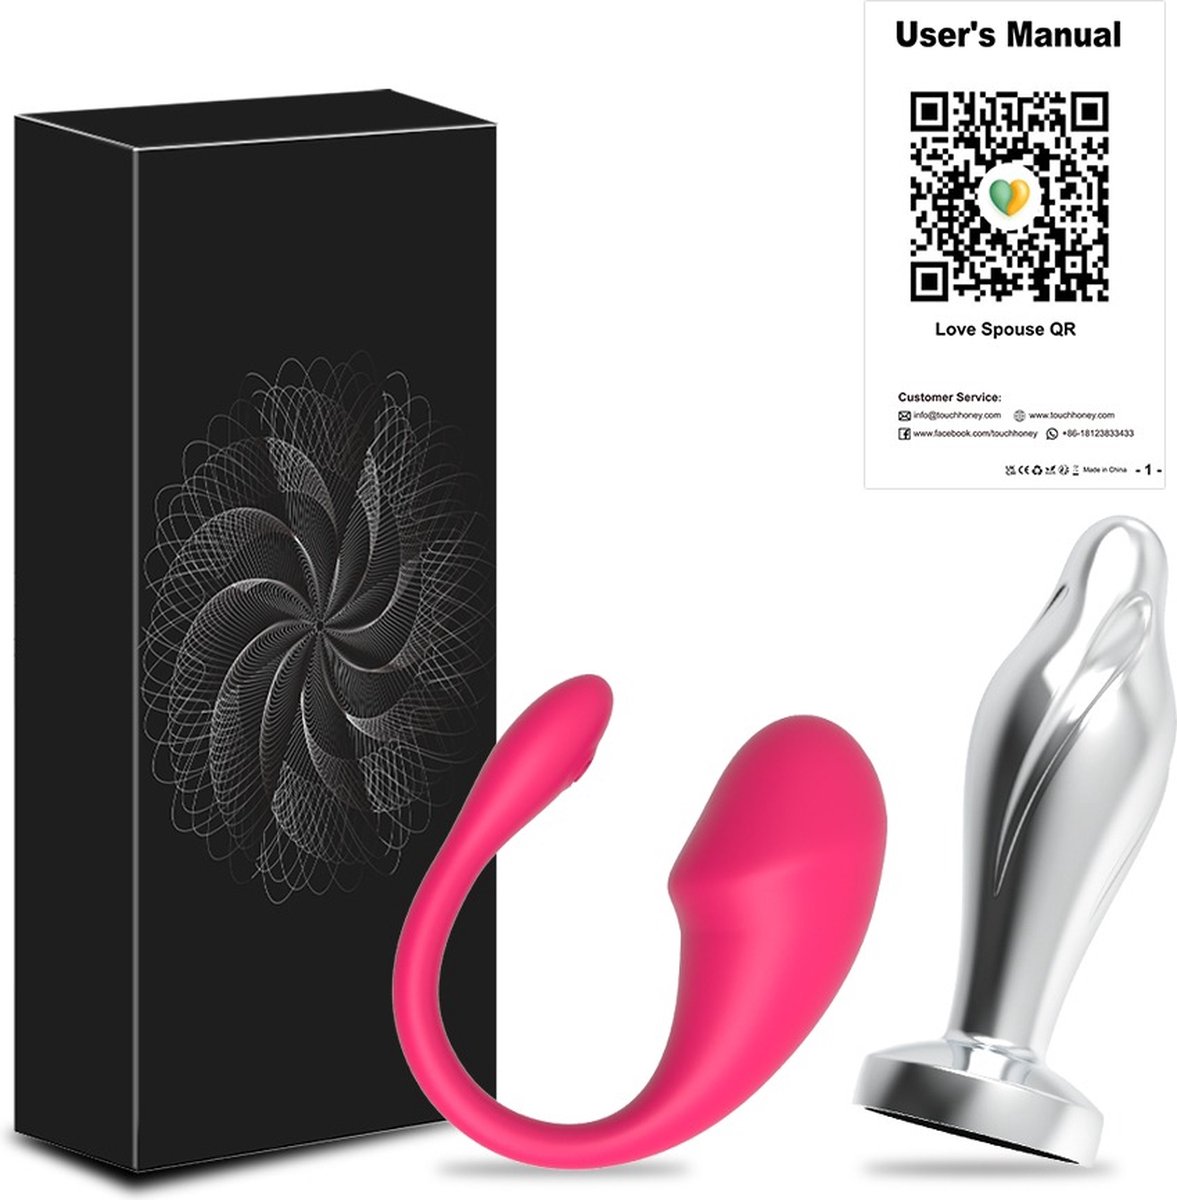 COMBI DEAL - Vibrerend Ei met App + Vibrator Butt Plug met App - Vibrator Voor Vrouwen - Luv Egg - Anale Plug - Dildo - Afstand Relaties - Onlyfans - Sex Toys - Mannen en Vrouwen - Vibration - Vibrato - Valentijnsdag